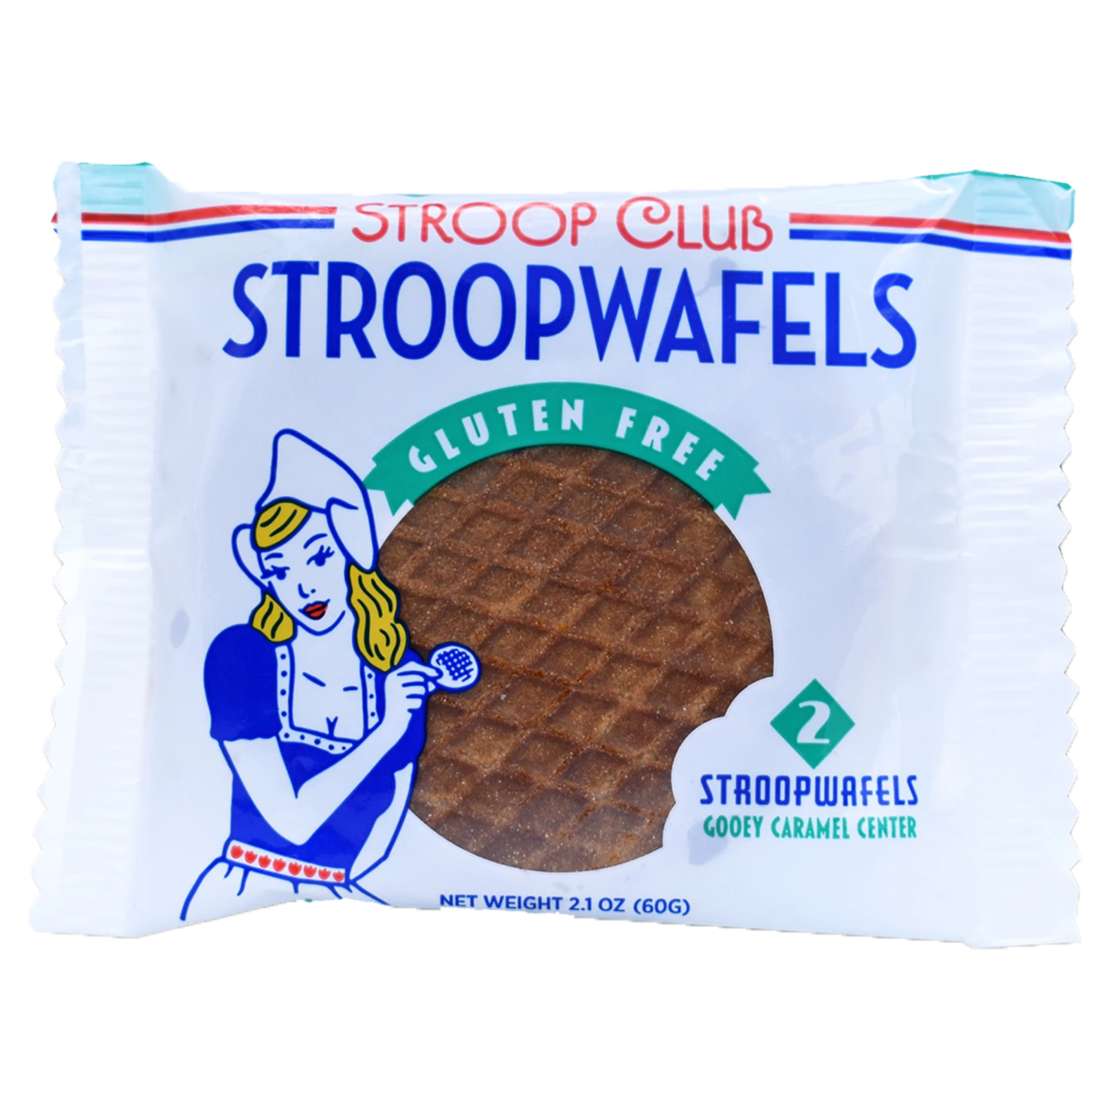 Stroopwaffles